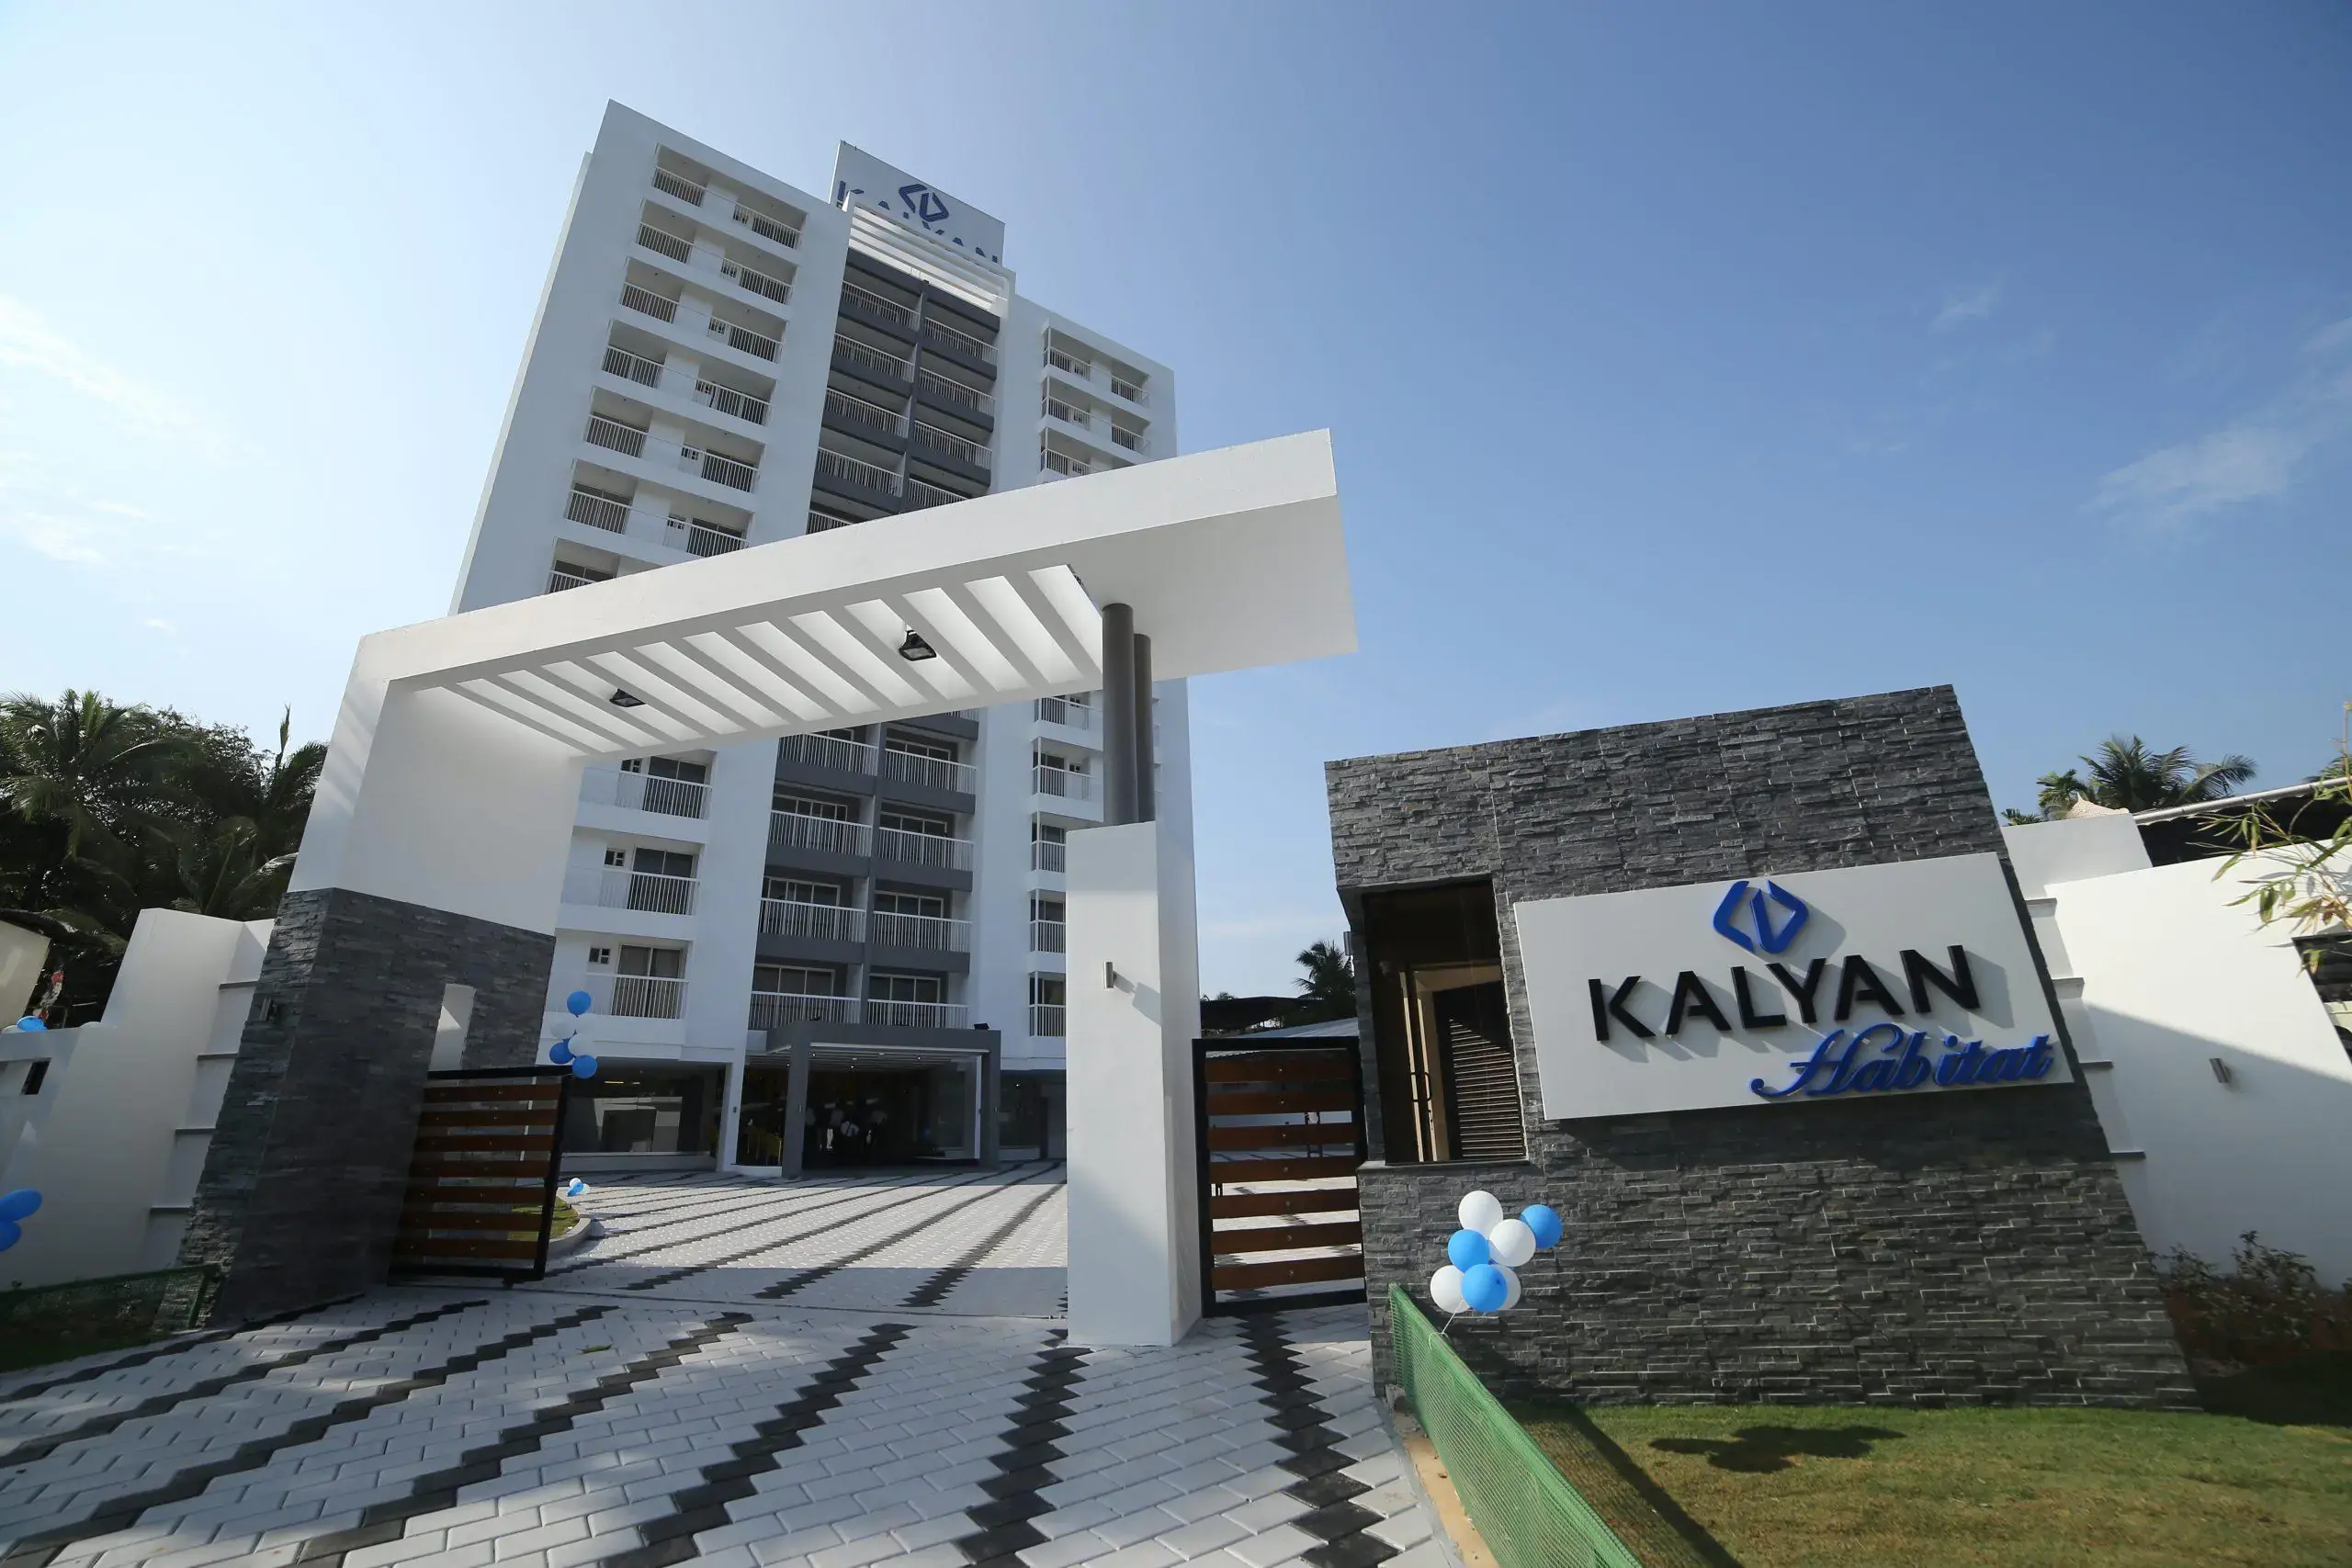 Villas for sale in Thrissur | Kalyan Sunfields | Kalyan Developers